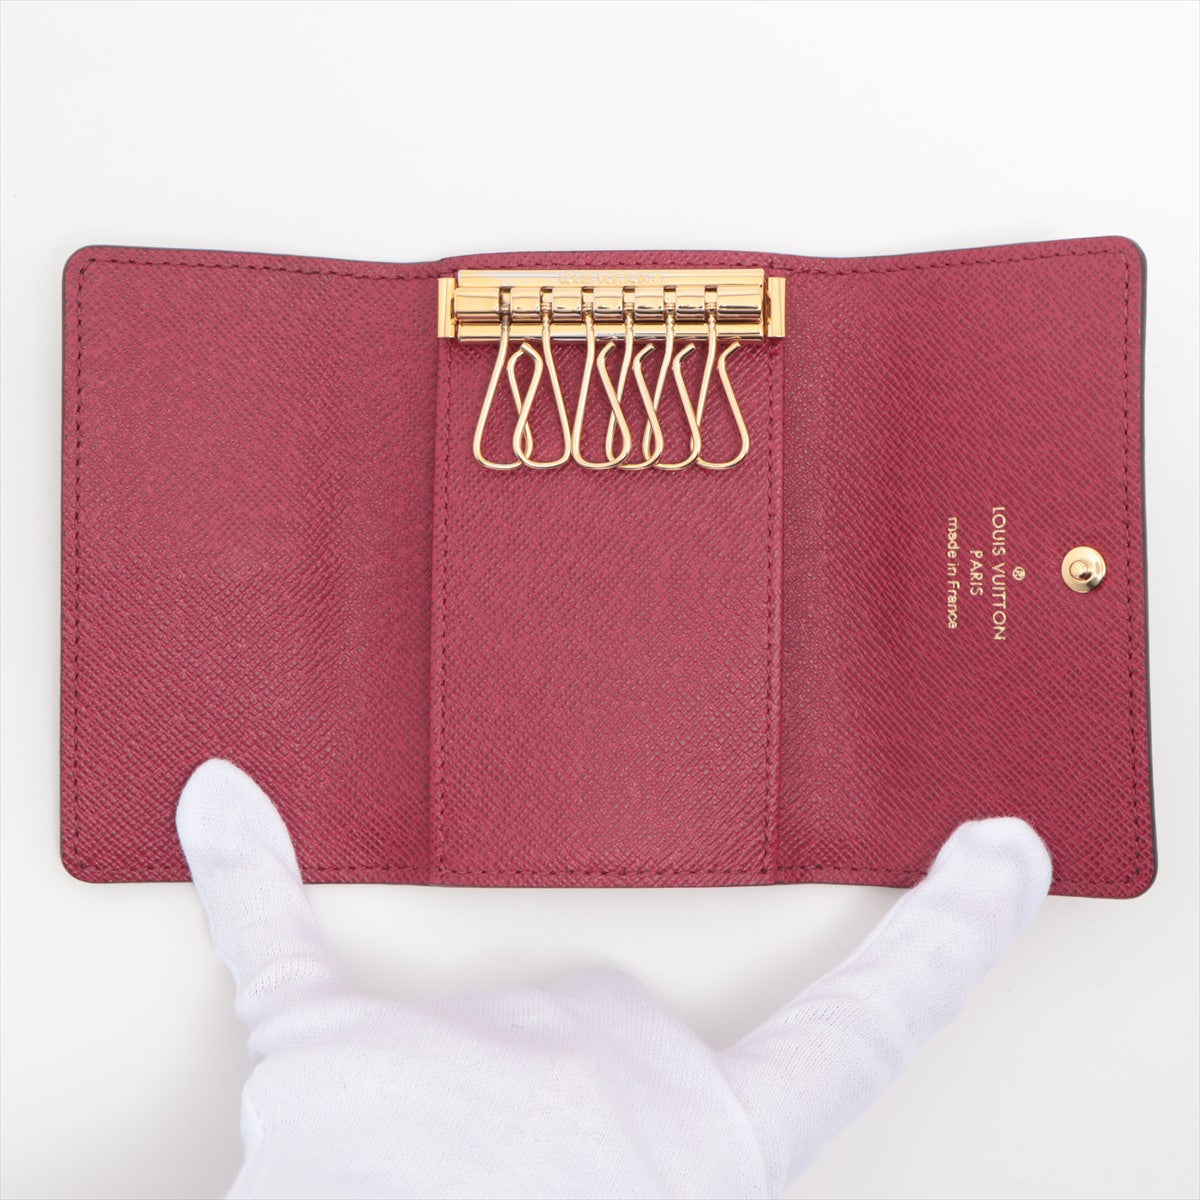 Louis Vuitton Monogram Multiclés 6 M60701 Fuschia Key Case responsive RFID